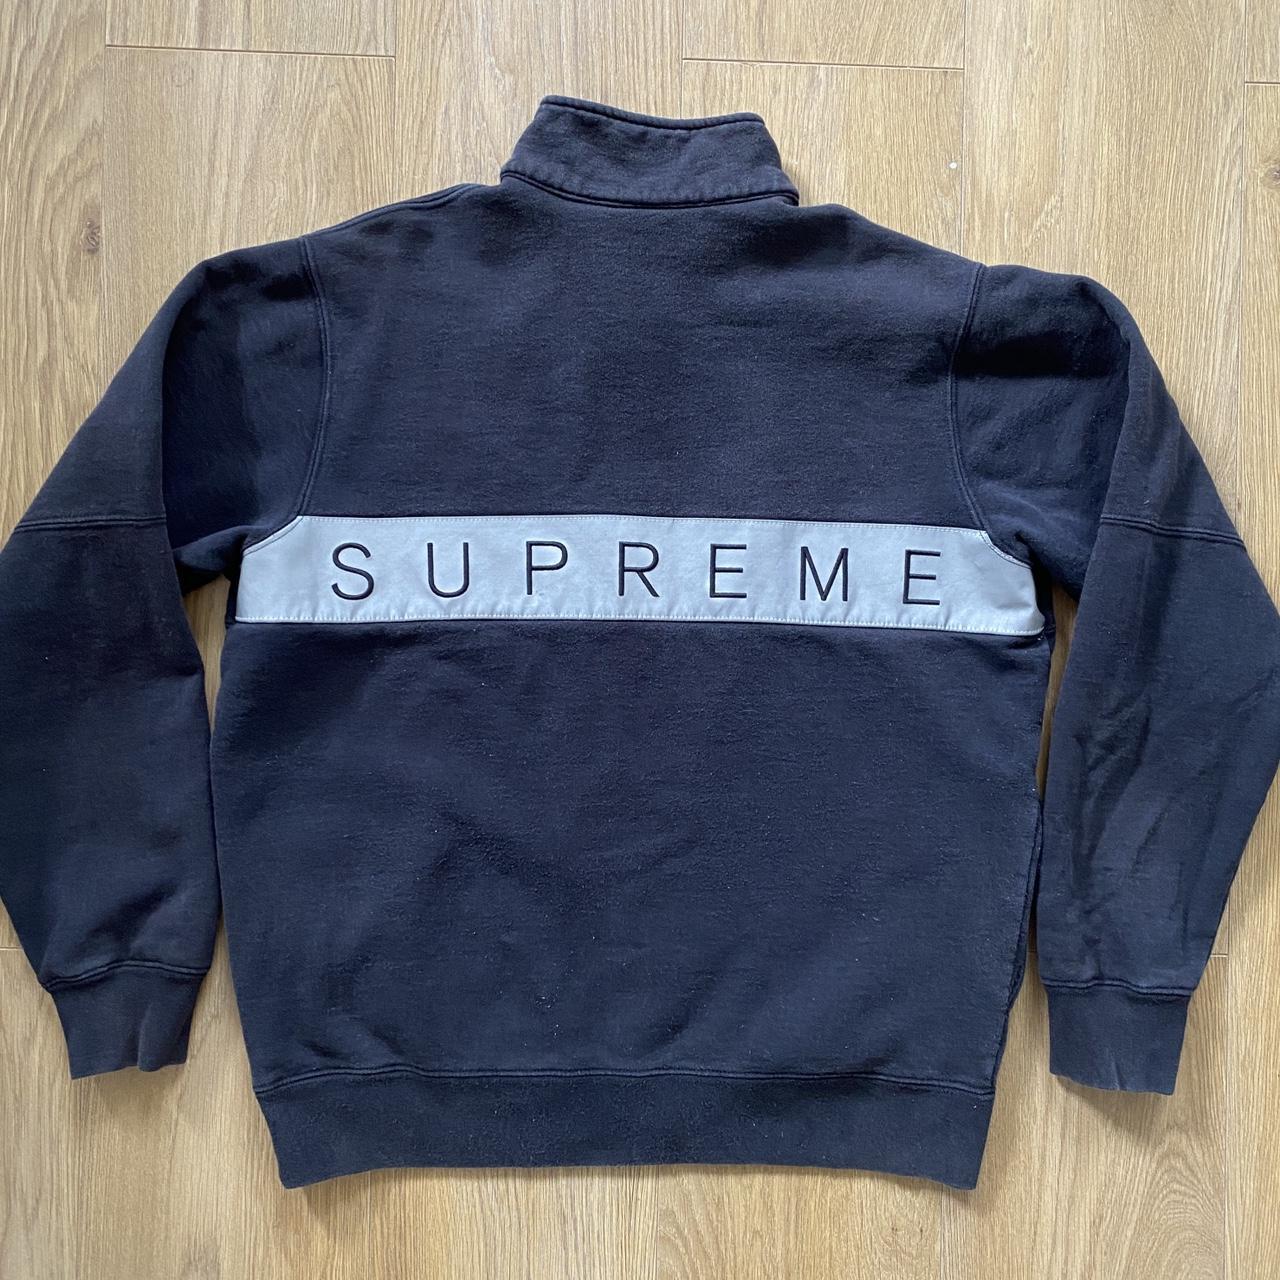 Supreme 1/4 Zip Sweatshirt , Mid 2000’s black...